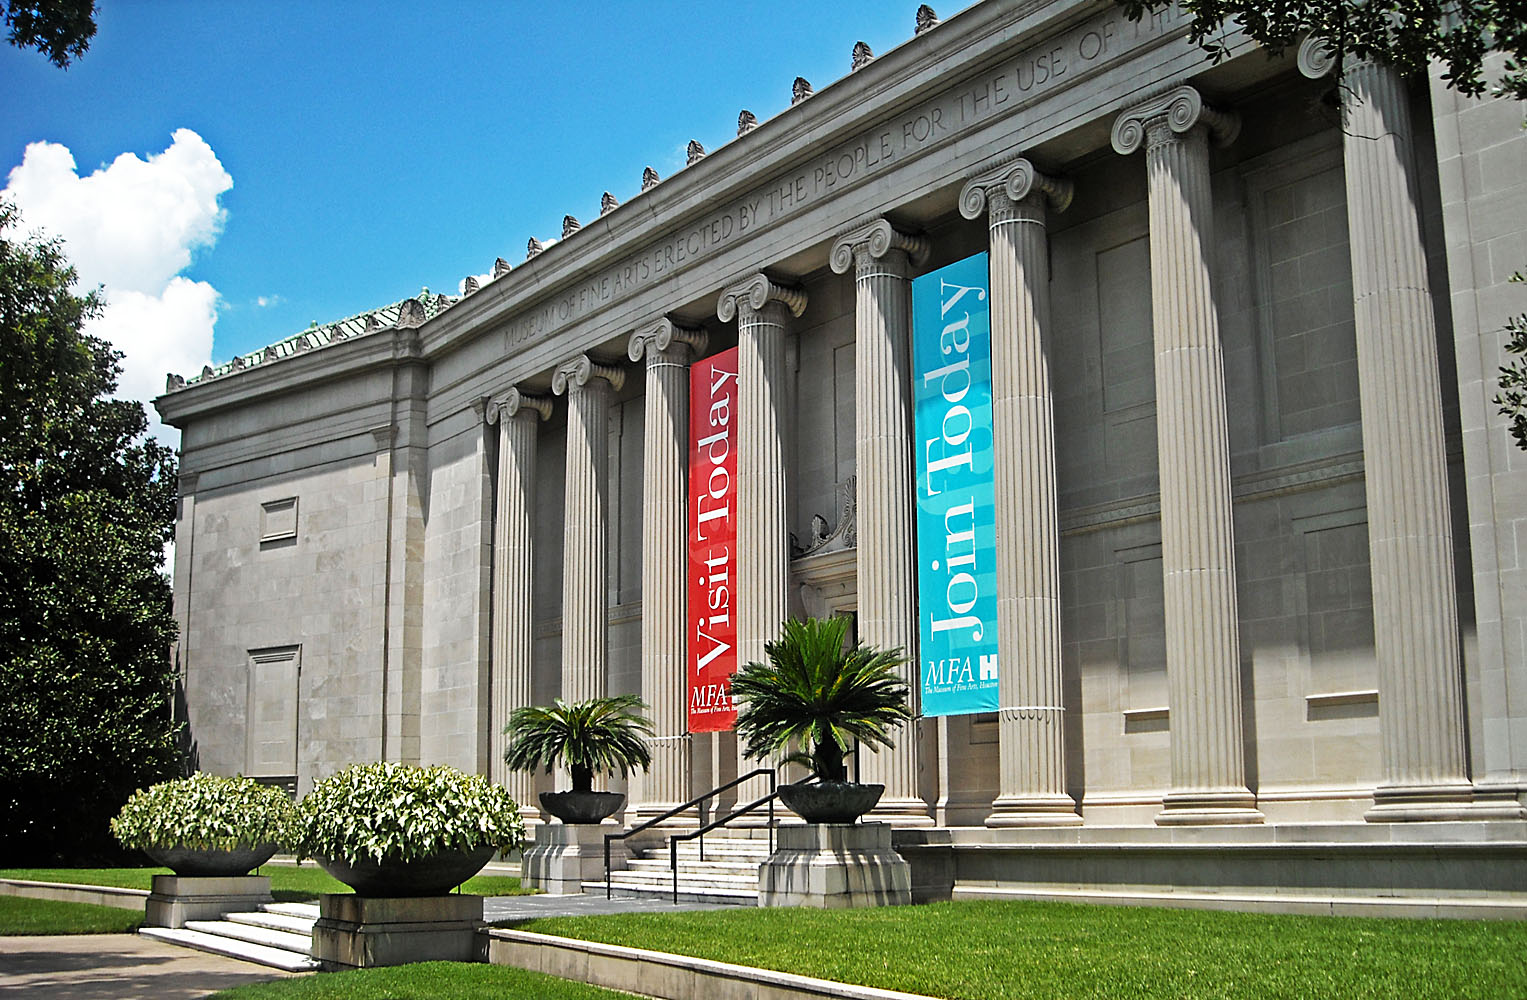 Museum of Fine Arts Houston